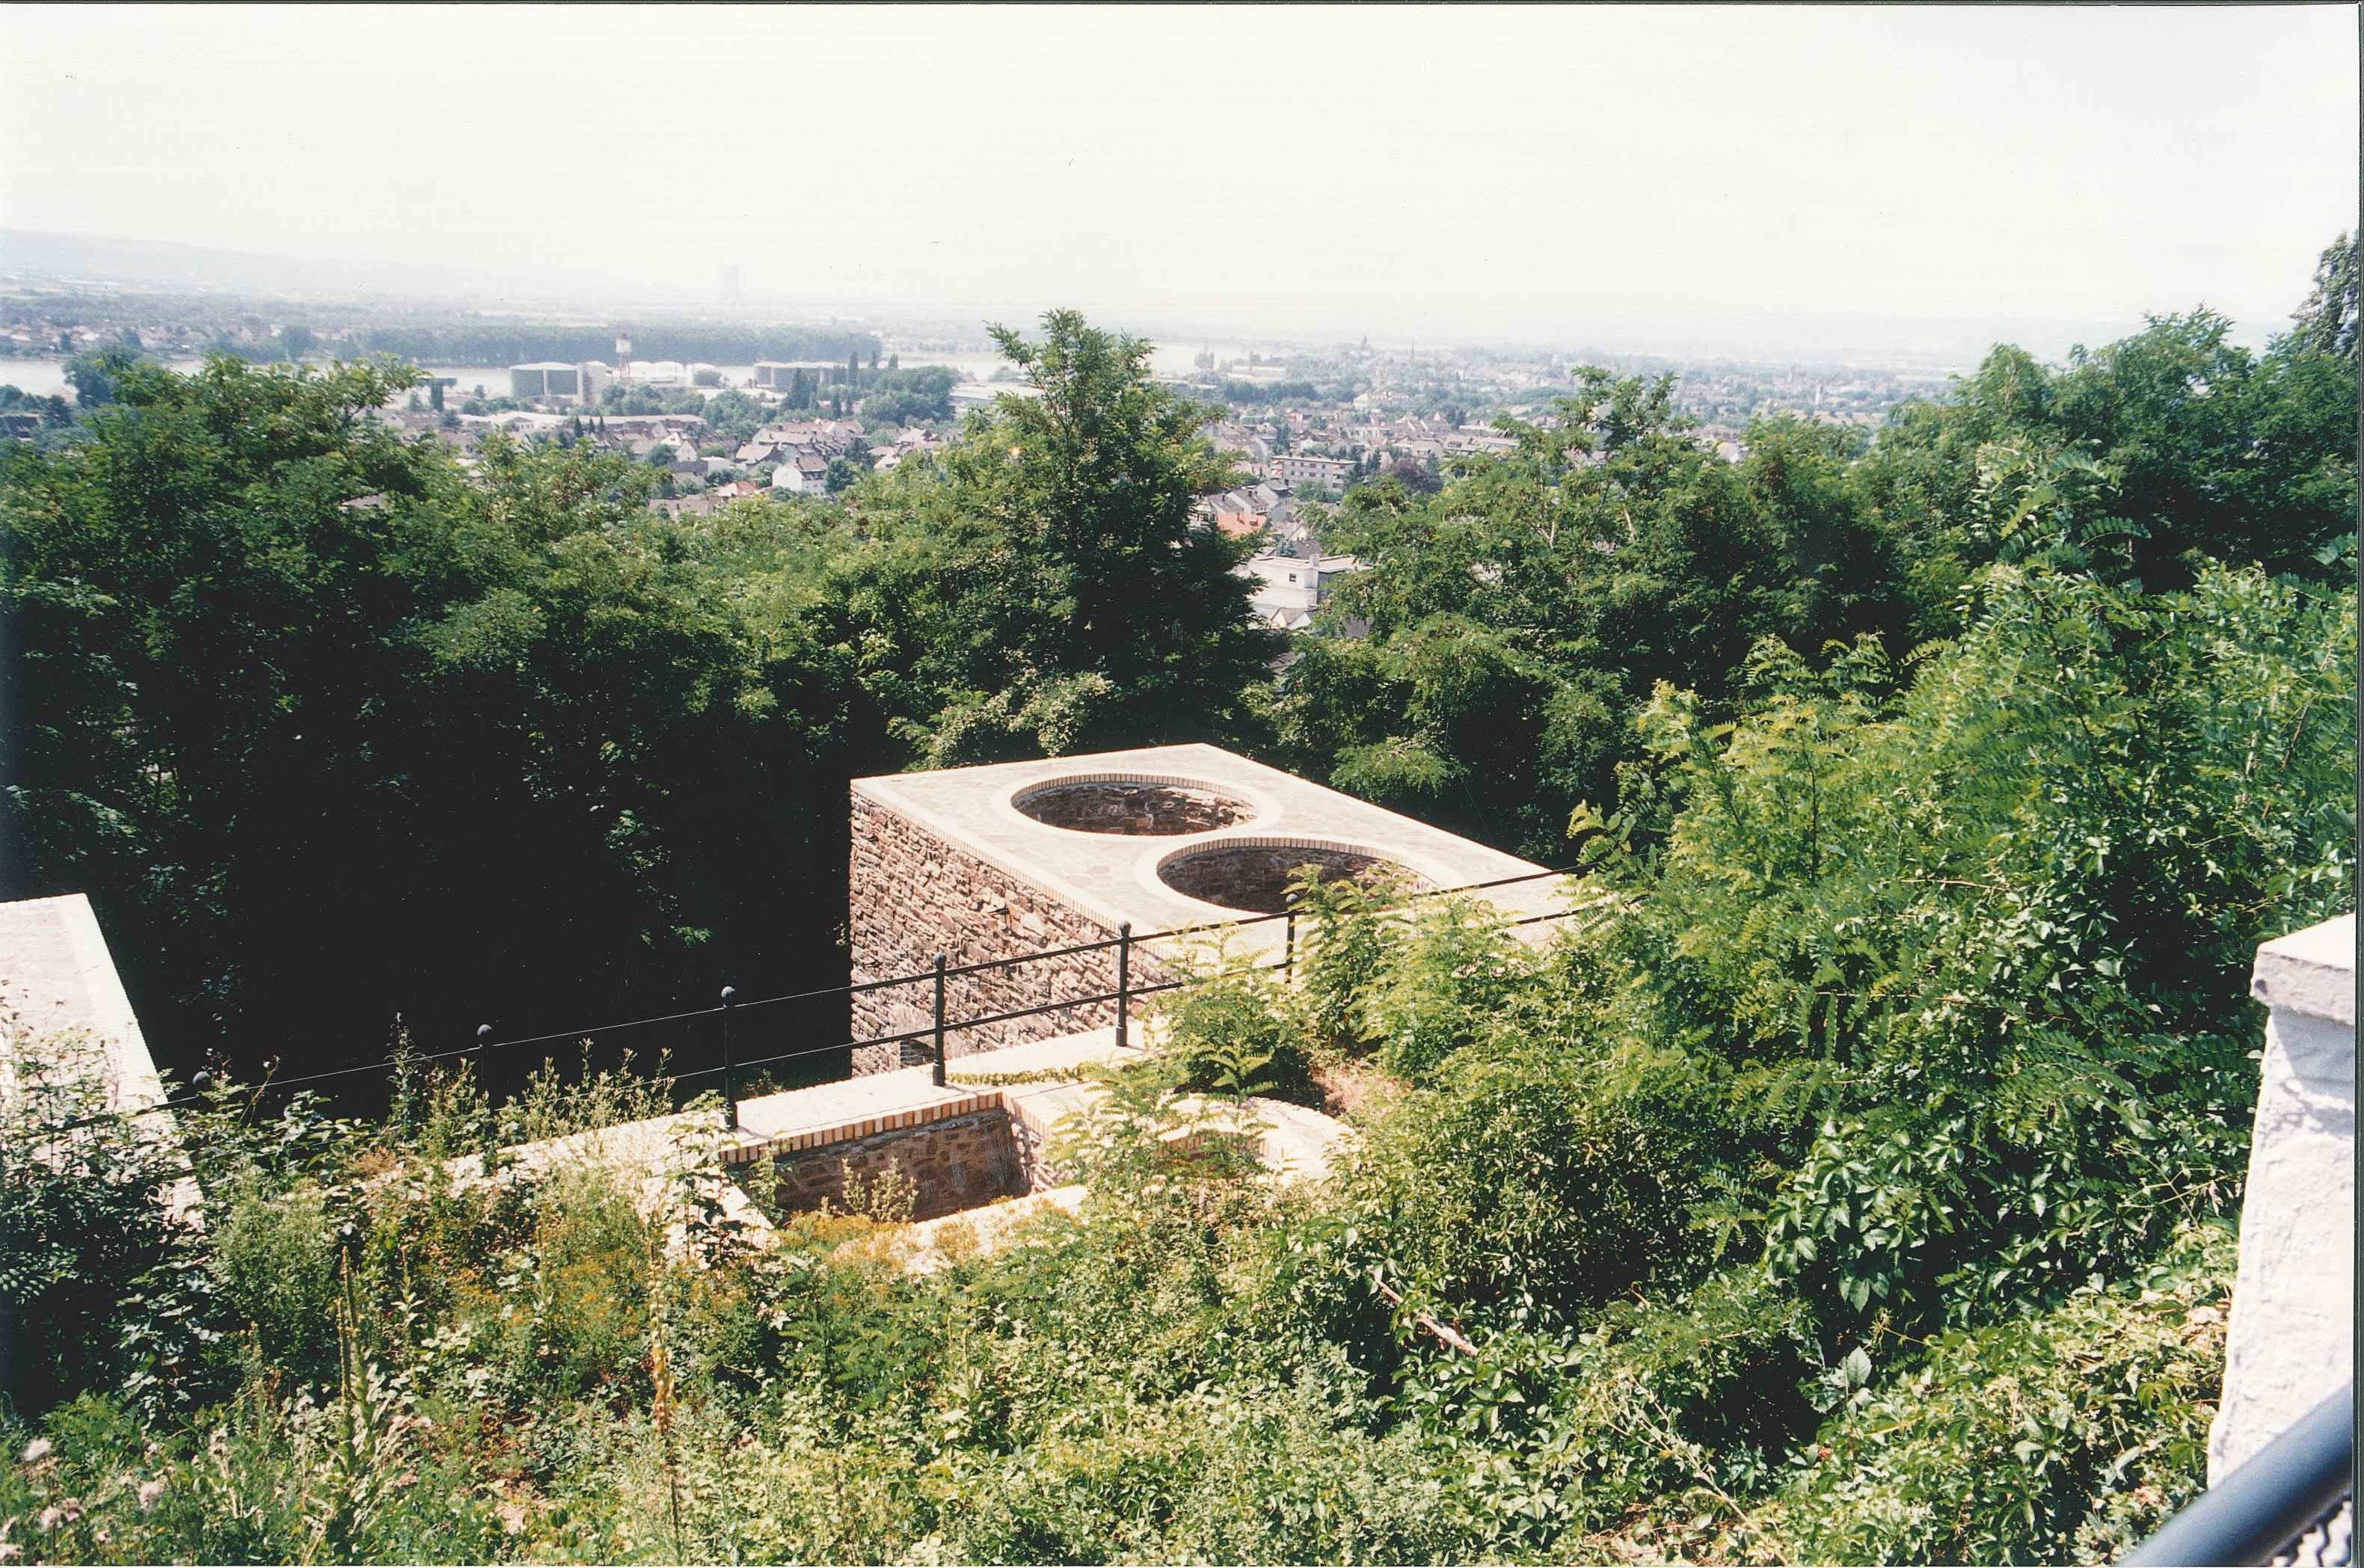 Eisenerz-Rostöfen der "Grube Werner" auf der Vierwindenhöhe, Bendorf, 1996 (REM CC BY-NC-SA)